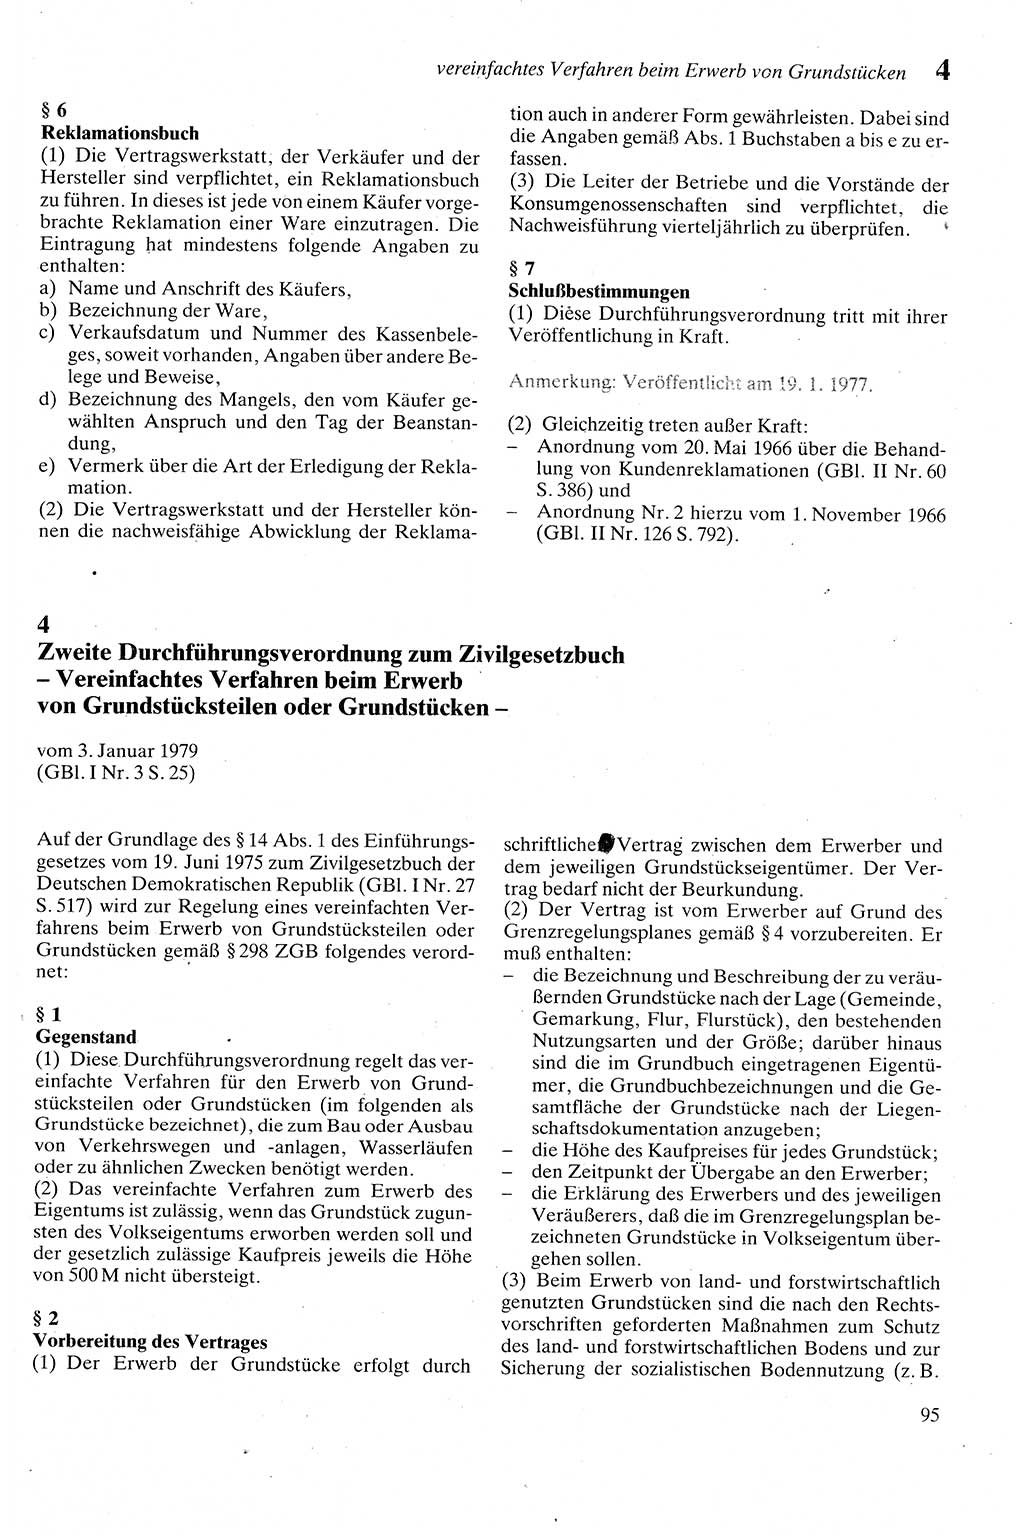 Zivilgesetzbuch (ZVG) sowie angrenzende Gesetze und Bestimmungen [Deutsche Demokratische Republik (DDR)] 1975, Seite 95 (ZGB Ges. Best. DDR 1975, S. 95)